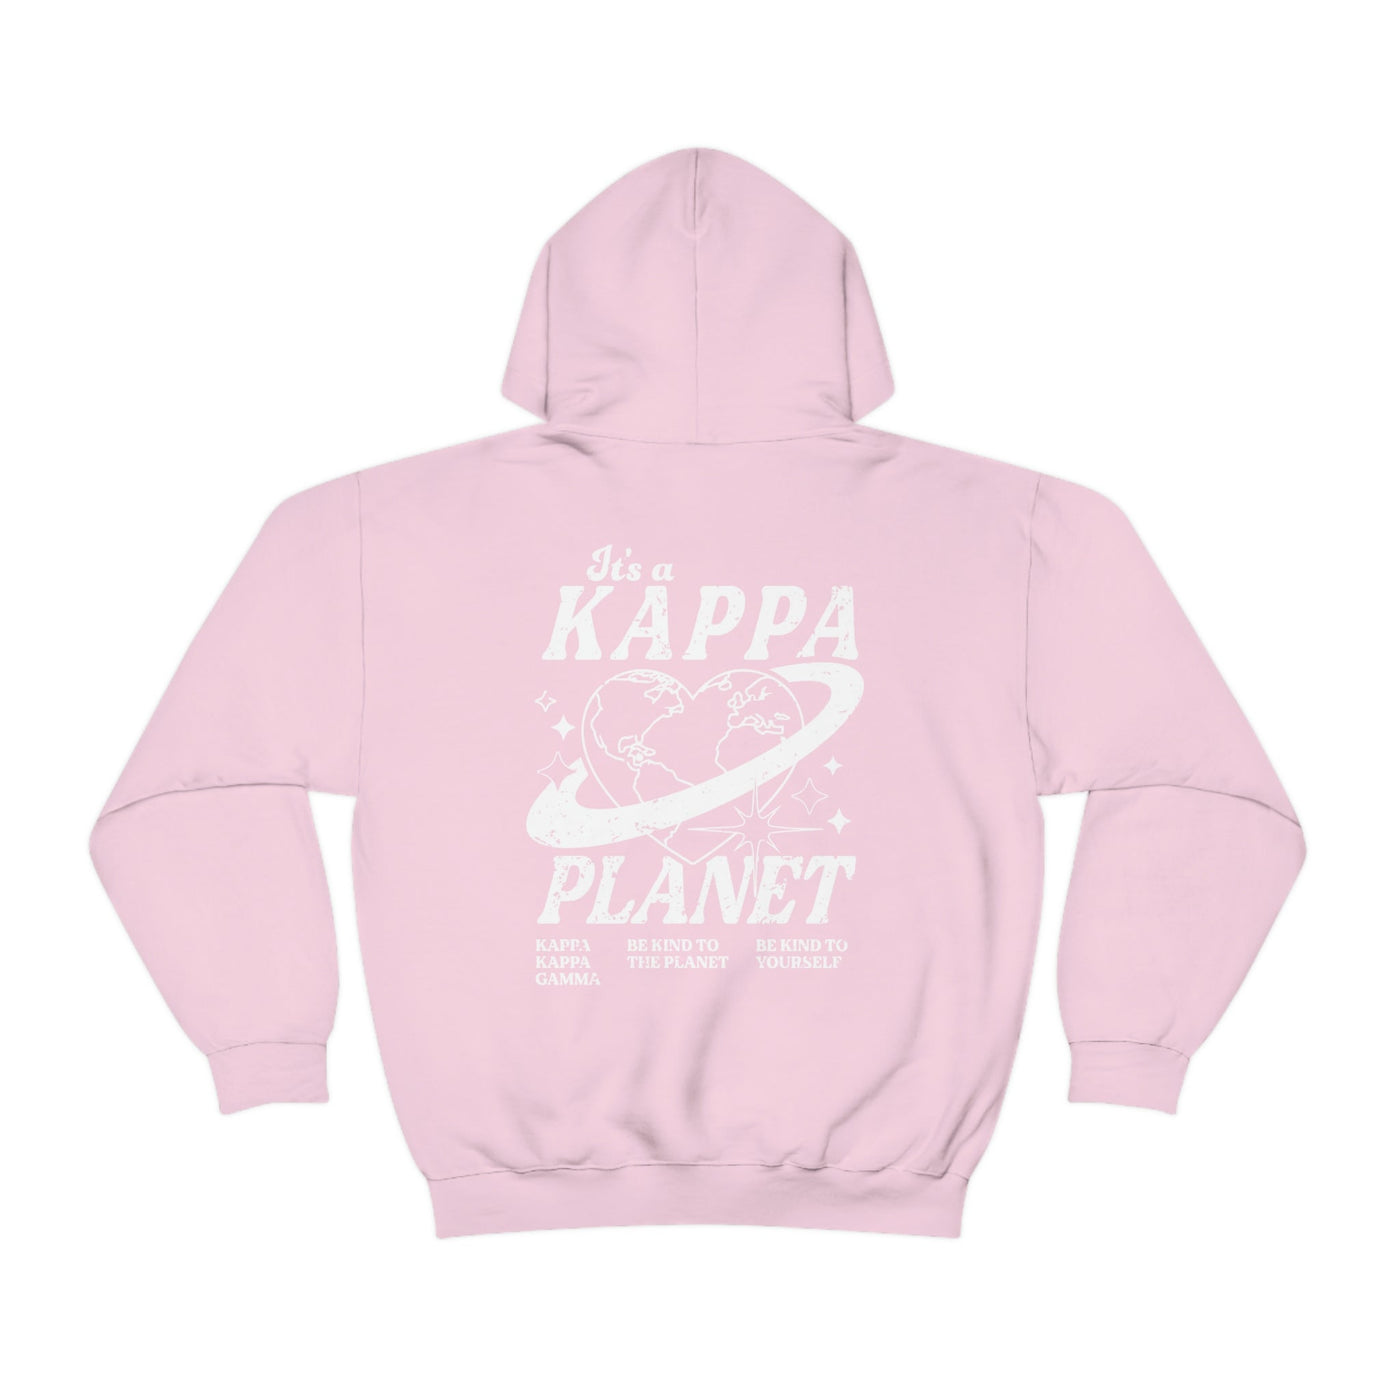 Kappa Kappa Gamma Planet Hoodie | Be Kind to the Planet Trendy Sorority Hoodie